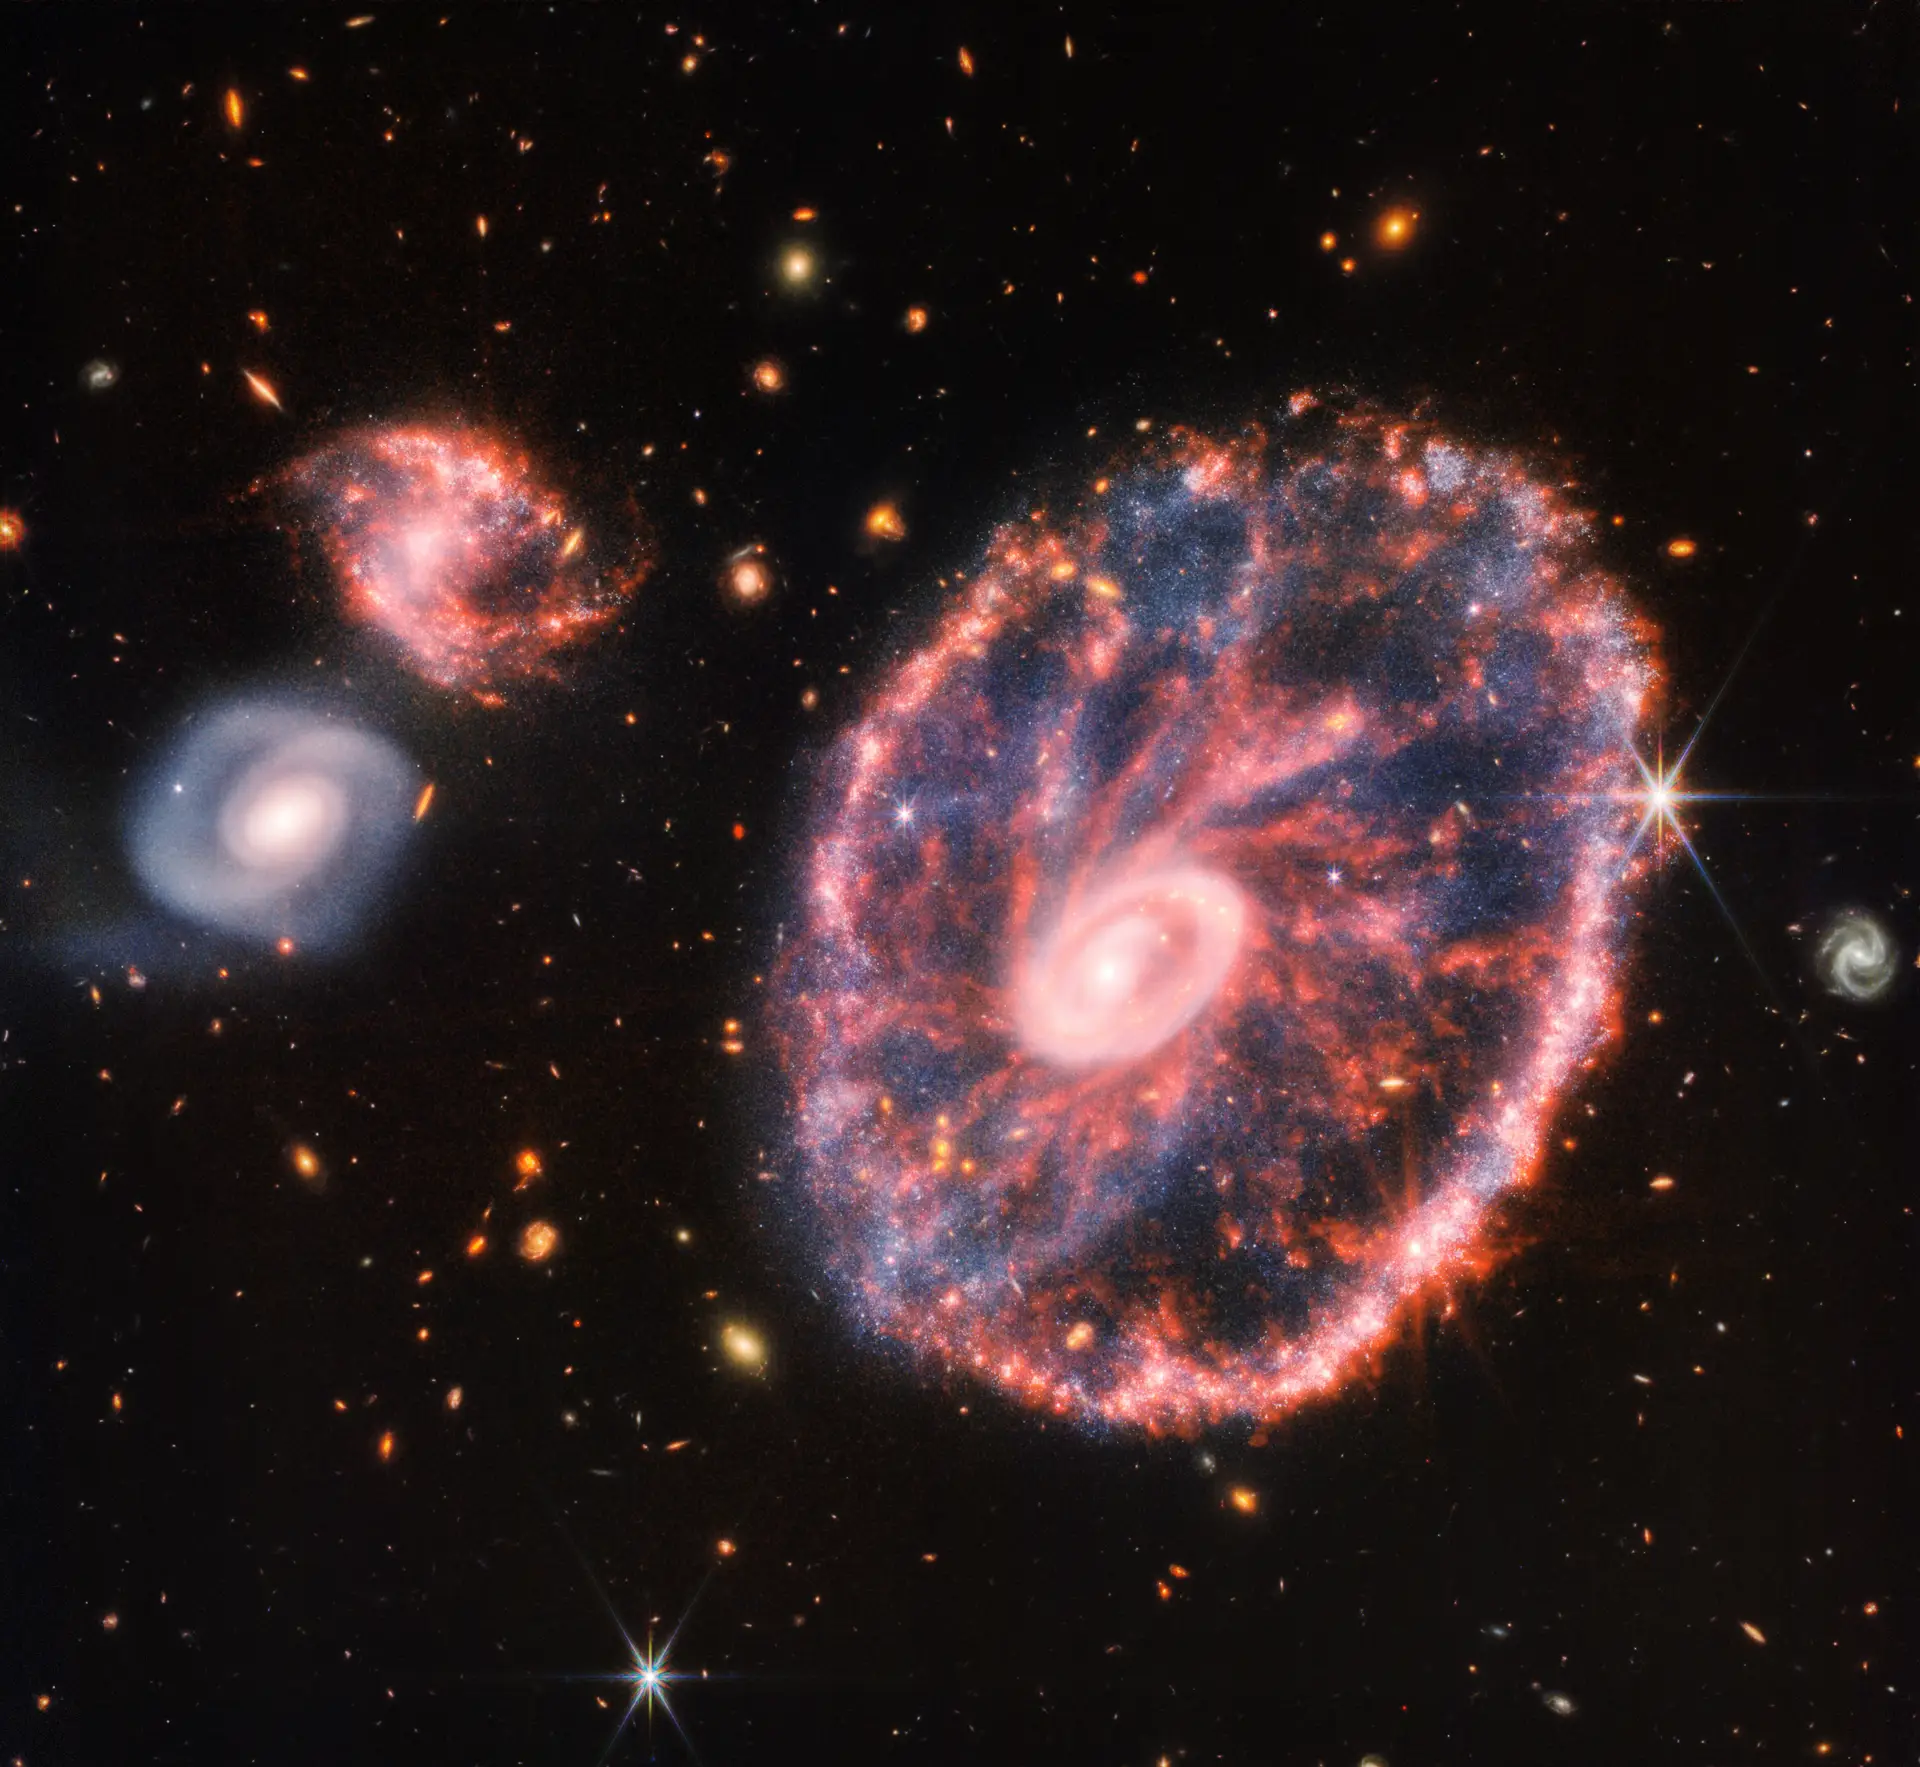 Estrelas a nascer numa estranha galáxia em forma de roda